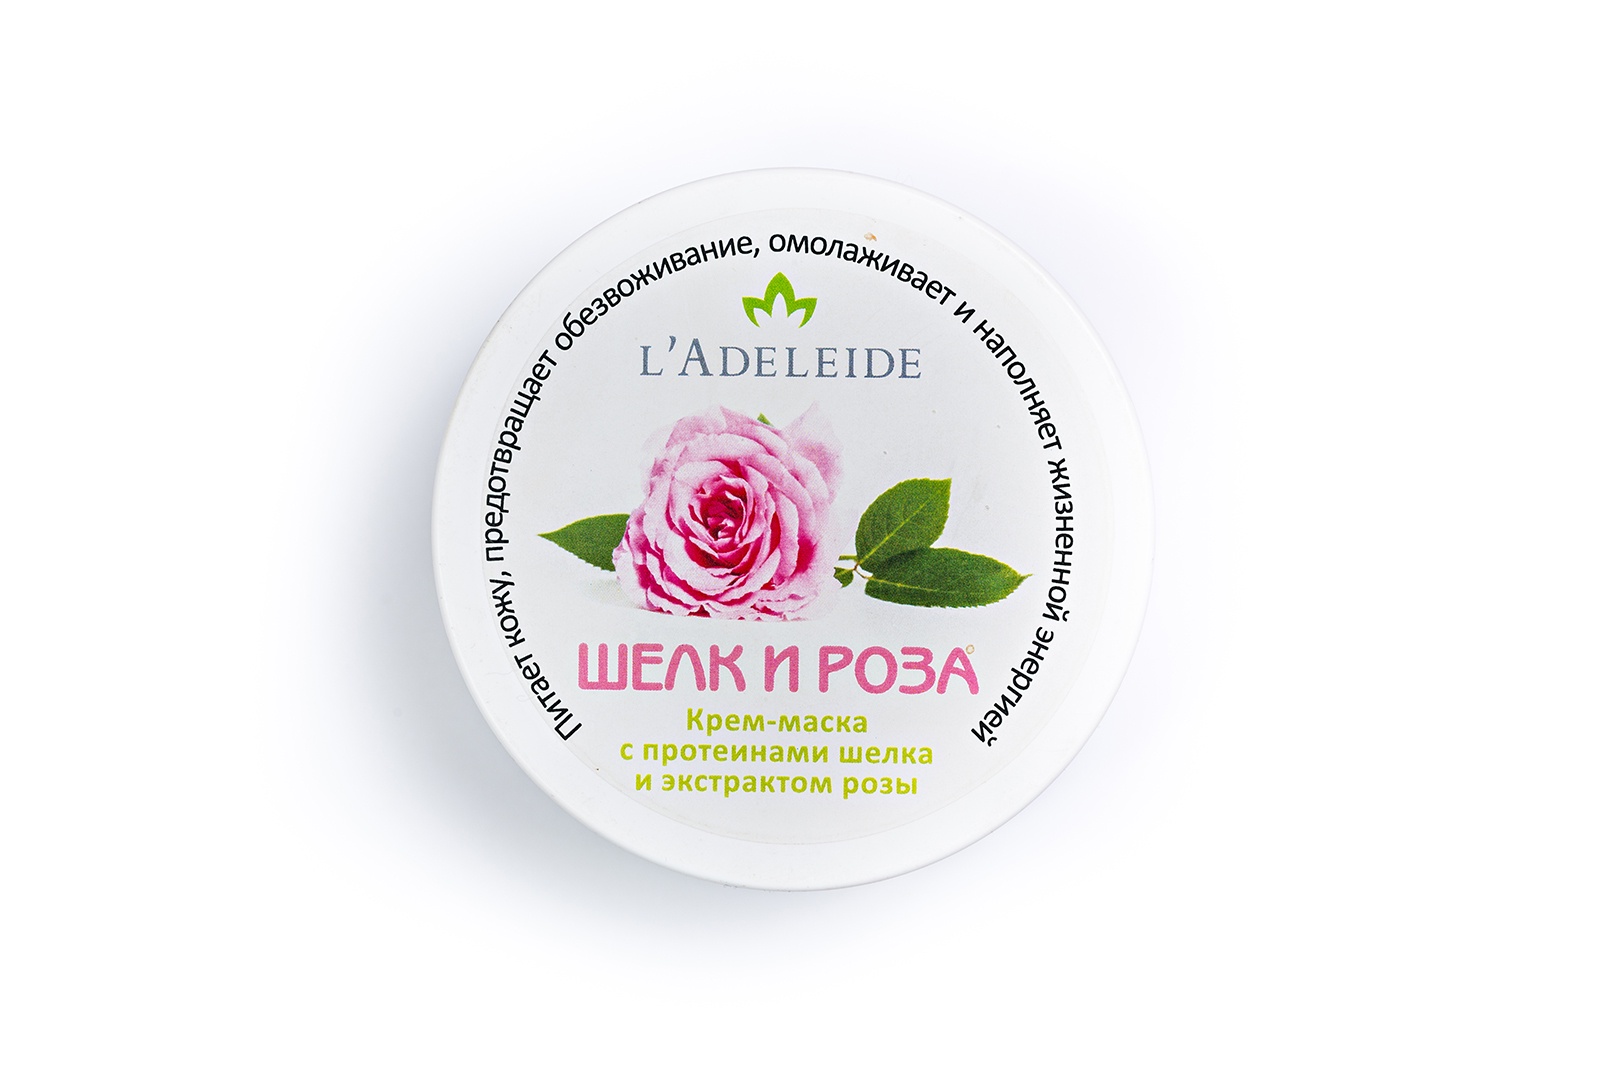 Маска косметическая L'Adeleide L'Adeleide Крем-маска с протеинами шелка и экстрактом розы 